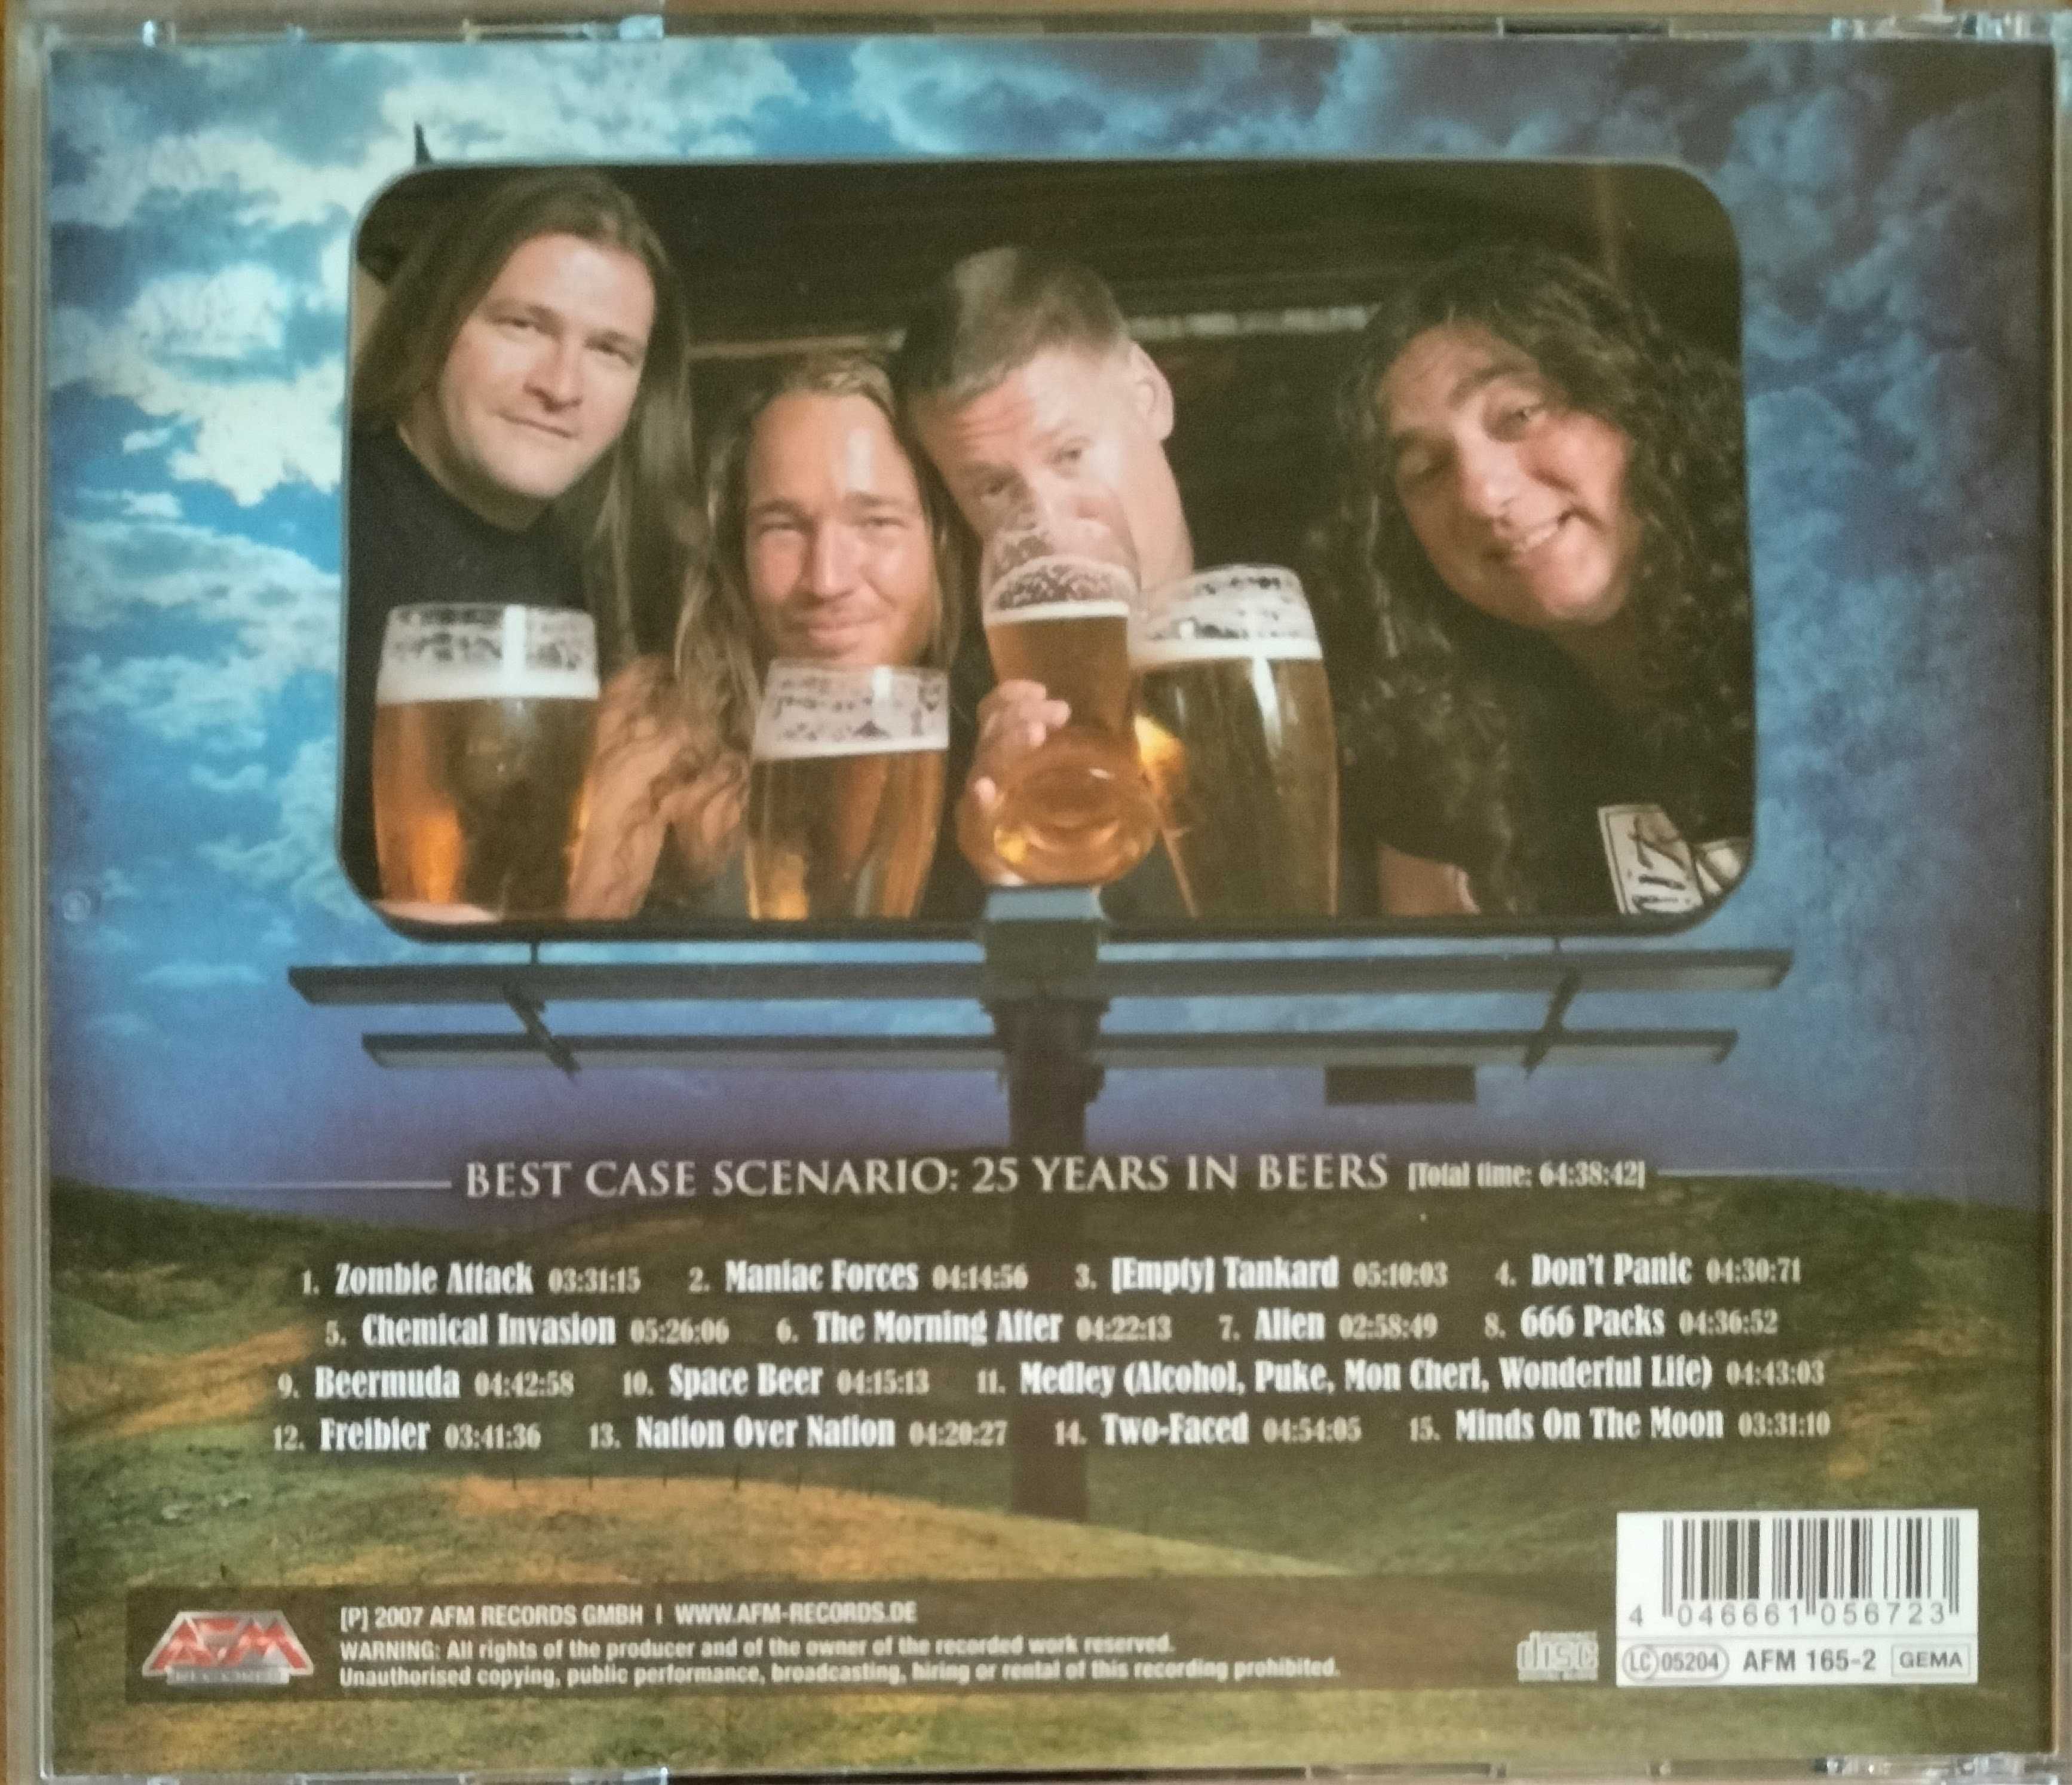 Tankard - Best Case Scenario: 25 Years In Beers